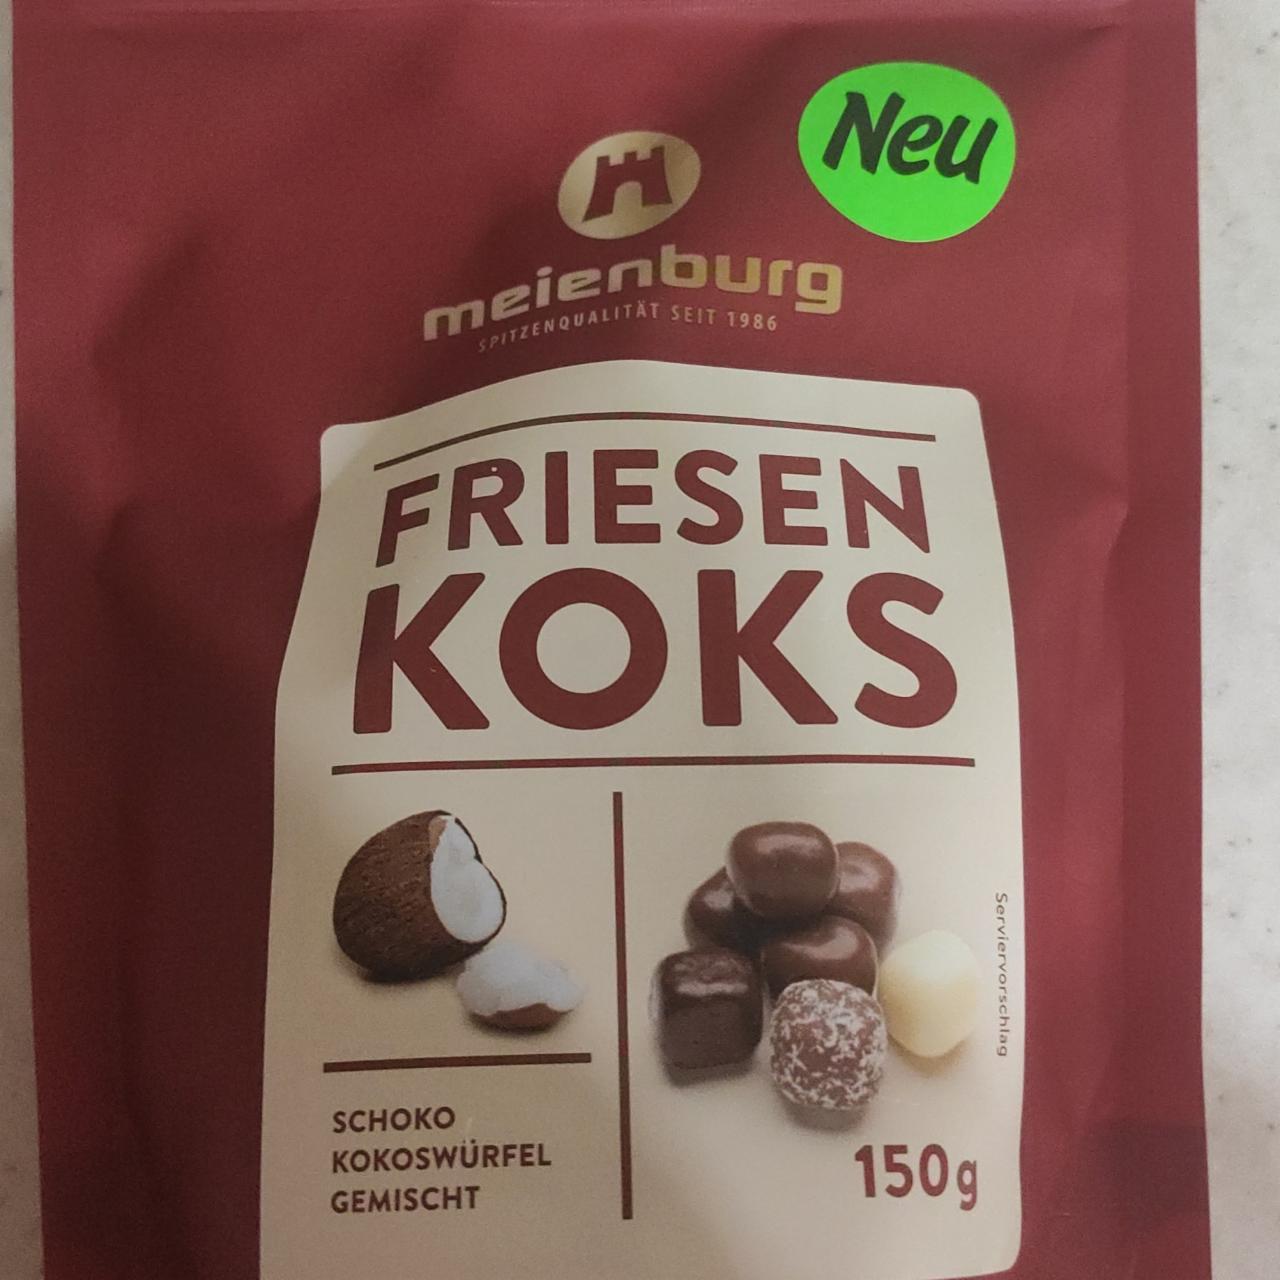 Фото - Цукерки шоколадні Friesen Koks Meienburg